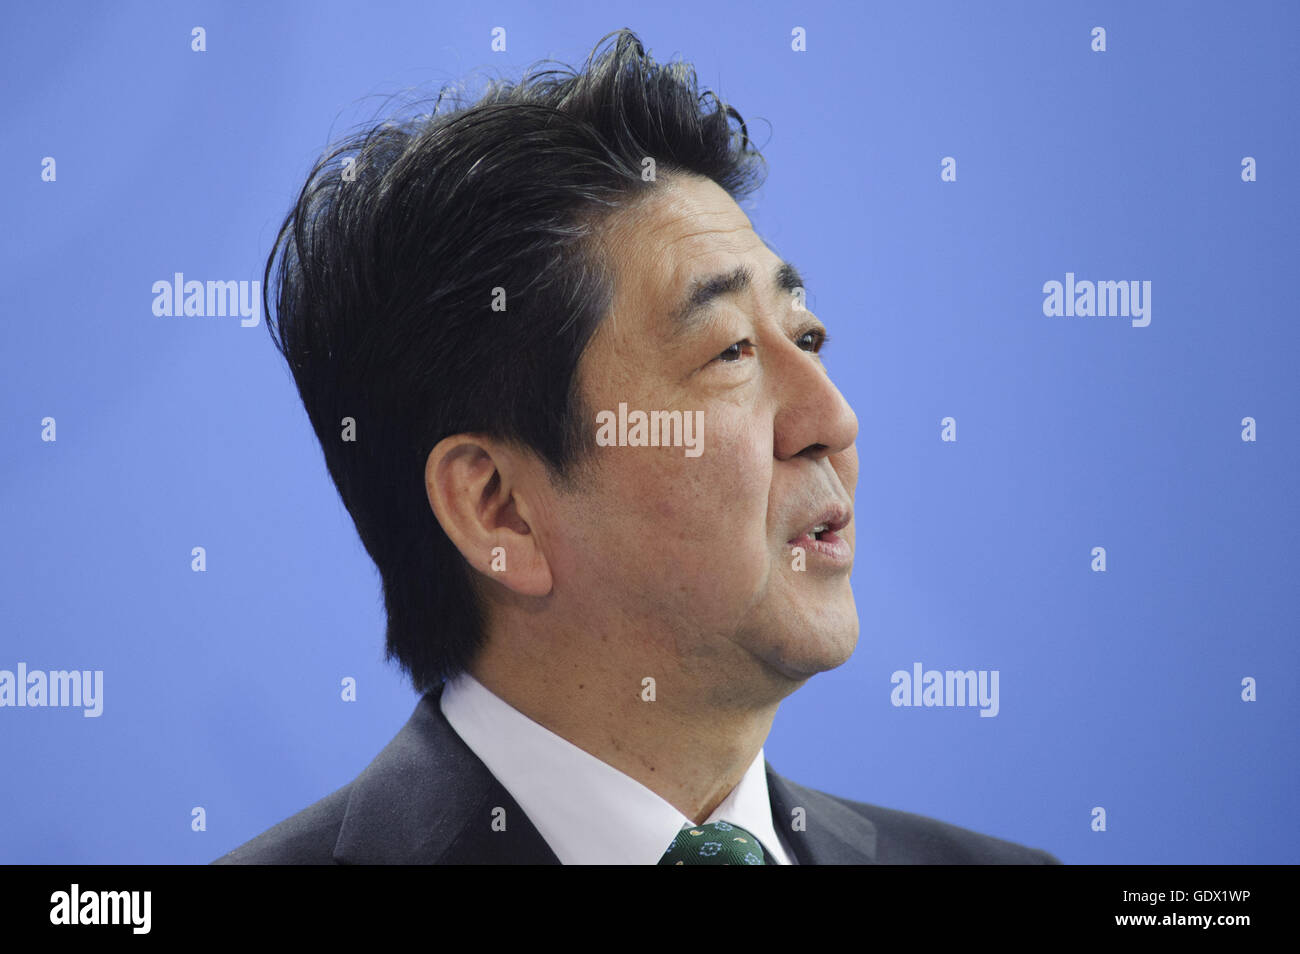 Ritratto di Shinzo Abe nel corso di una conferenza stampa tenutasi a Berlino, Germania, 2014 Foto Stock